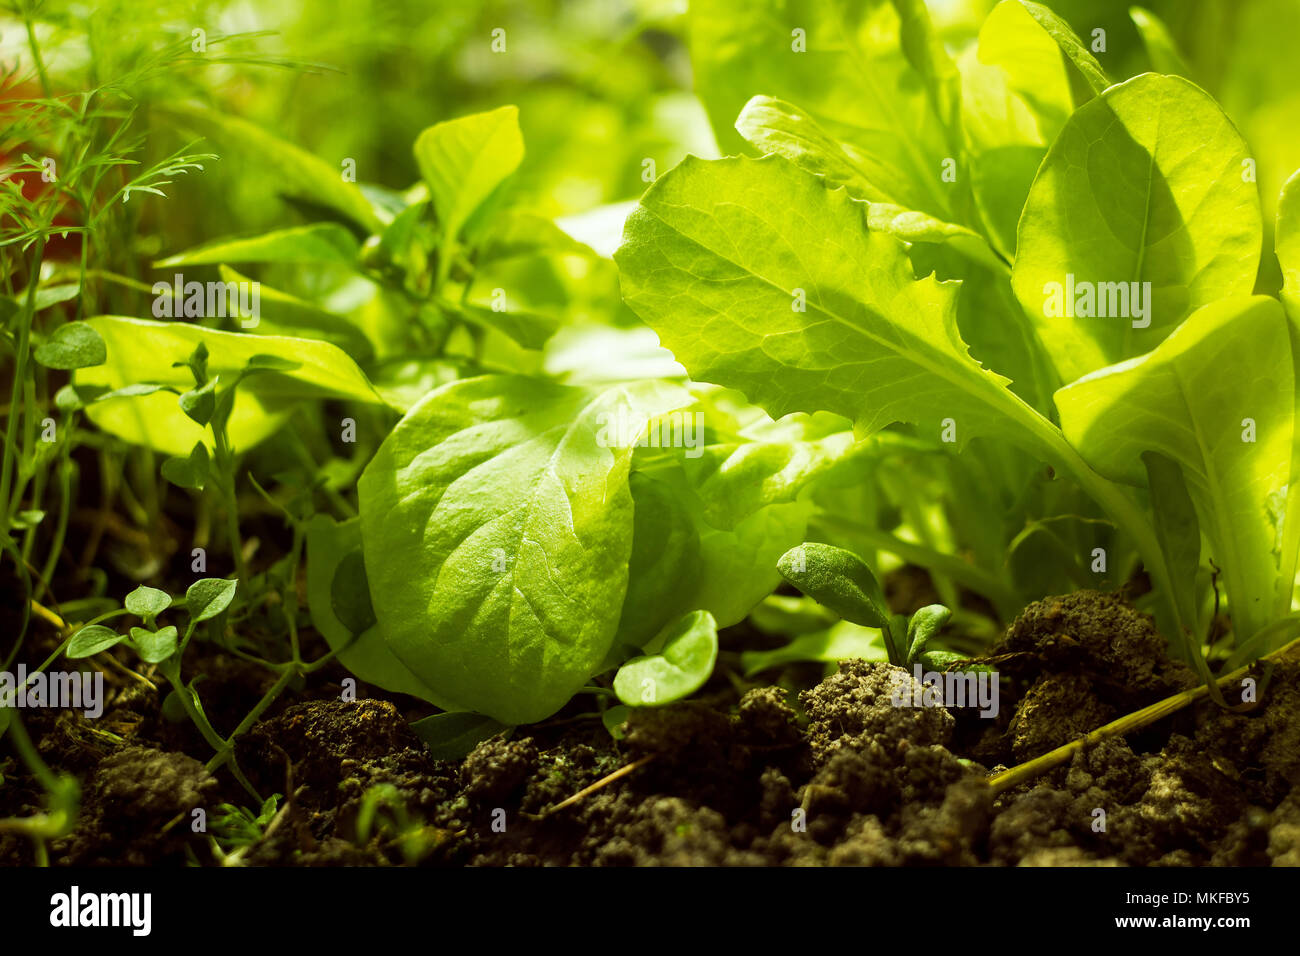 Leaves of green lettuce in soft sunlight Stock Photo